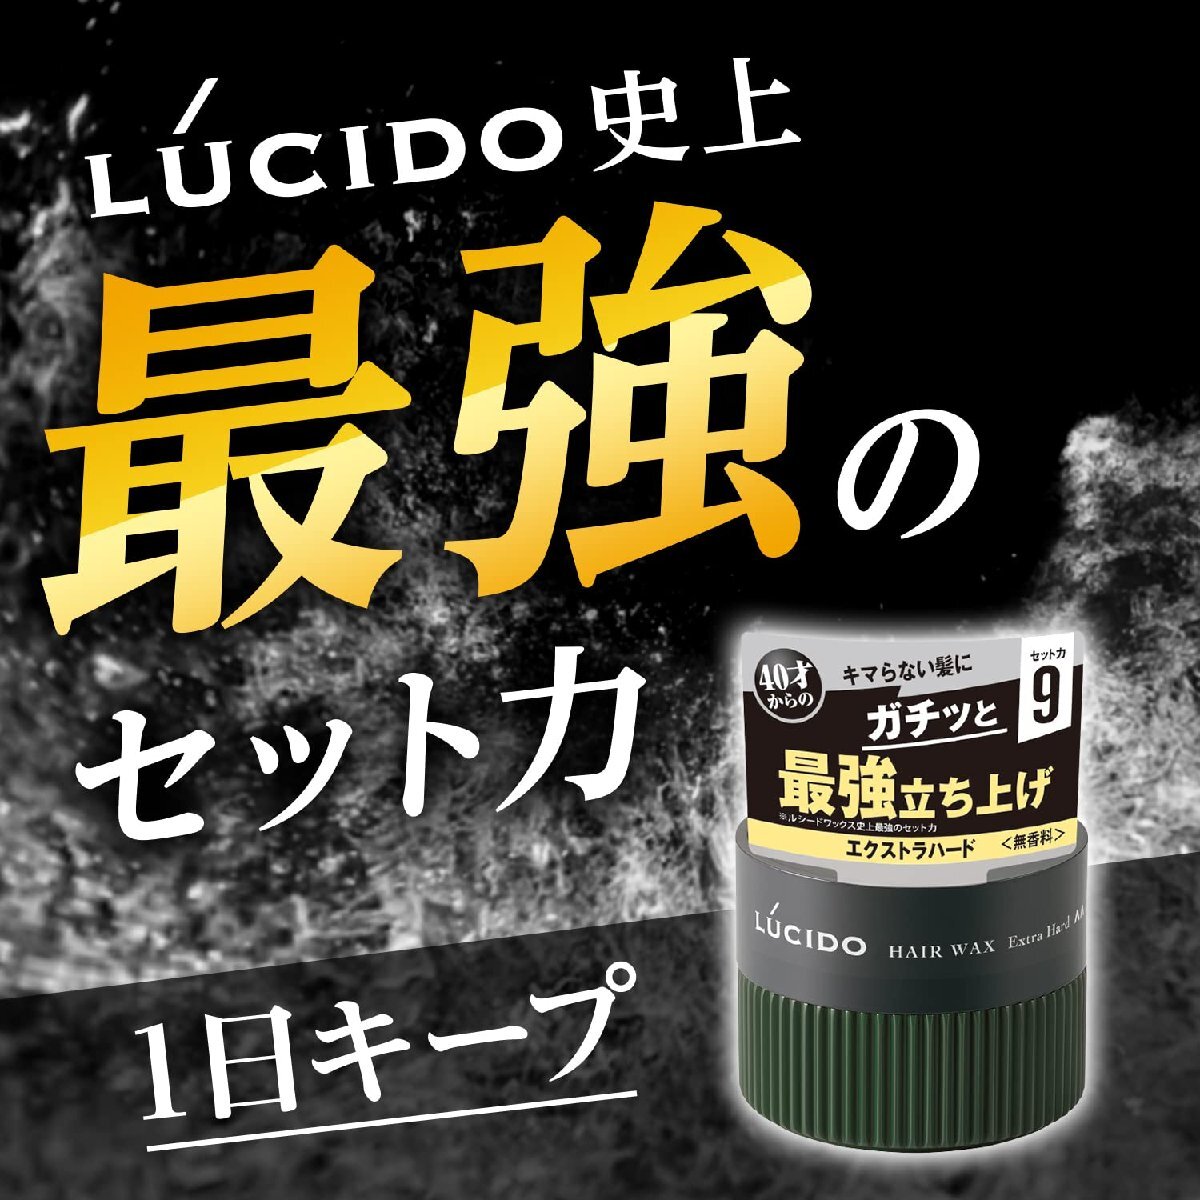 LUCIDO(ルシード) ヘアワックス エクストラハード メンズ スタイリング剤 無香料 80グラム (x 1)_画像2